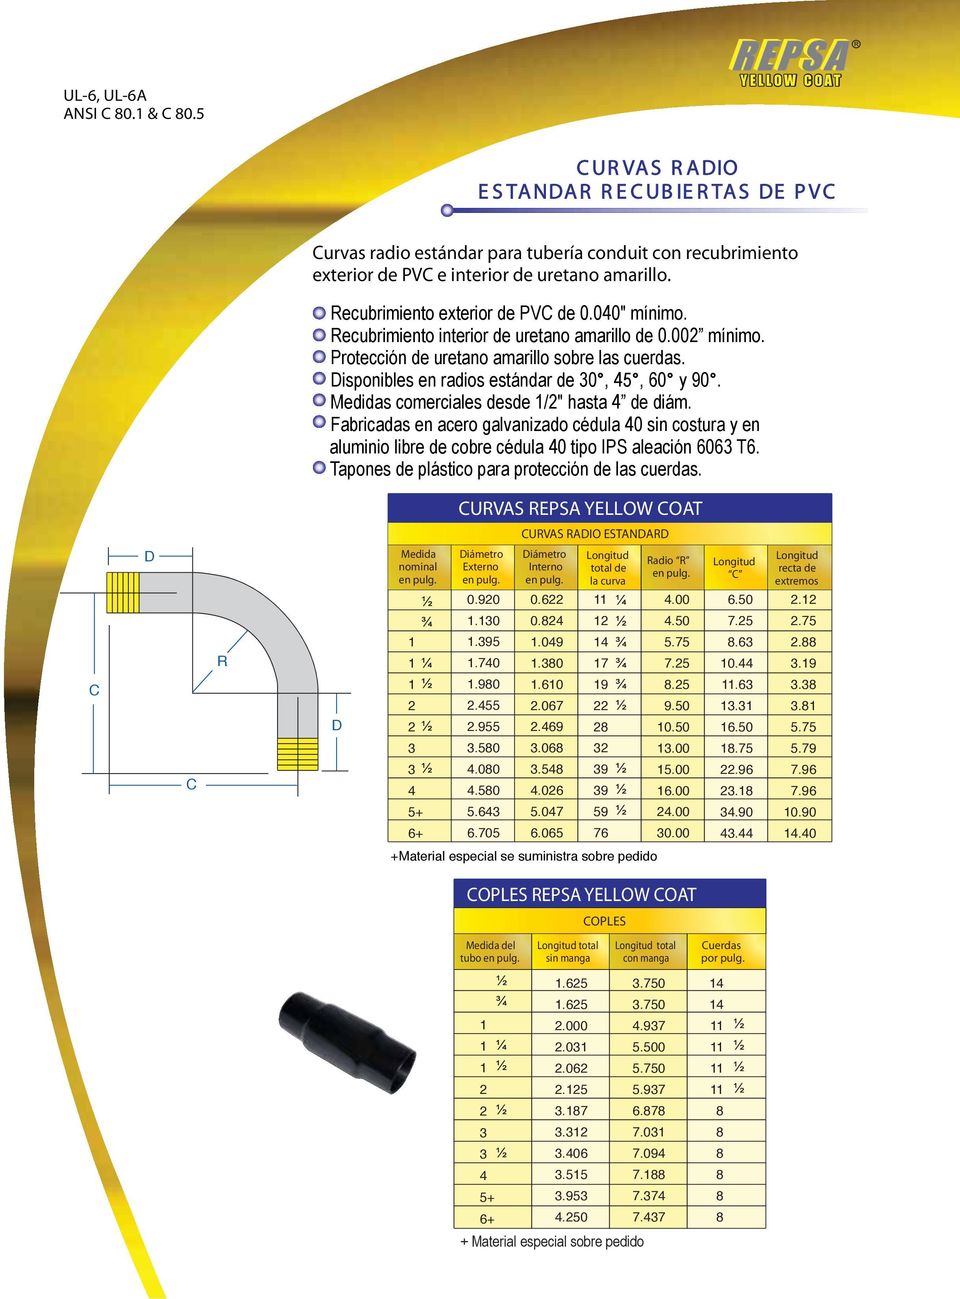 Recubrimiento exterior de PVC de 0.00" mínimo. Recubrimiento interior de uretano amarillo de 0.00 mínimo. Protección de uretano amarillo sobre las cuerdas.